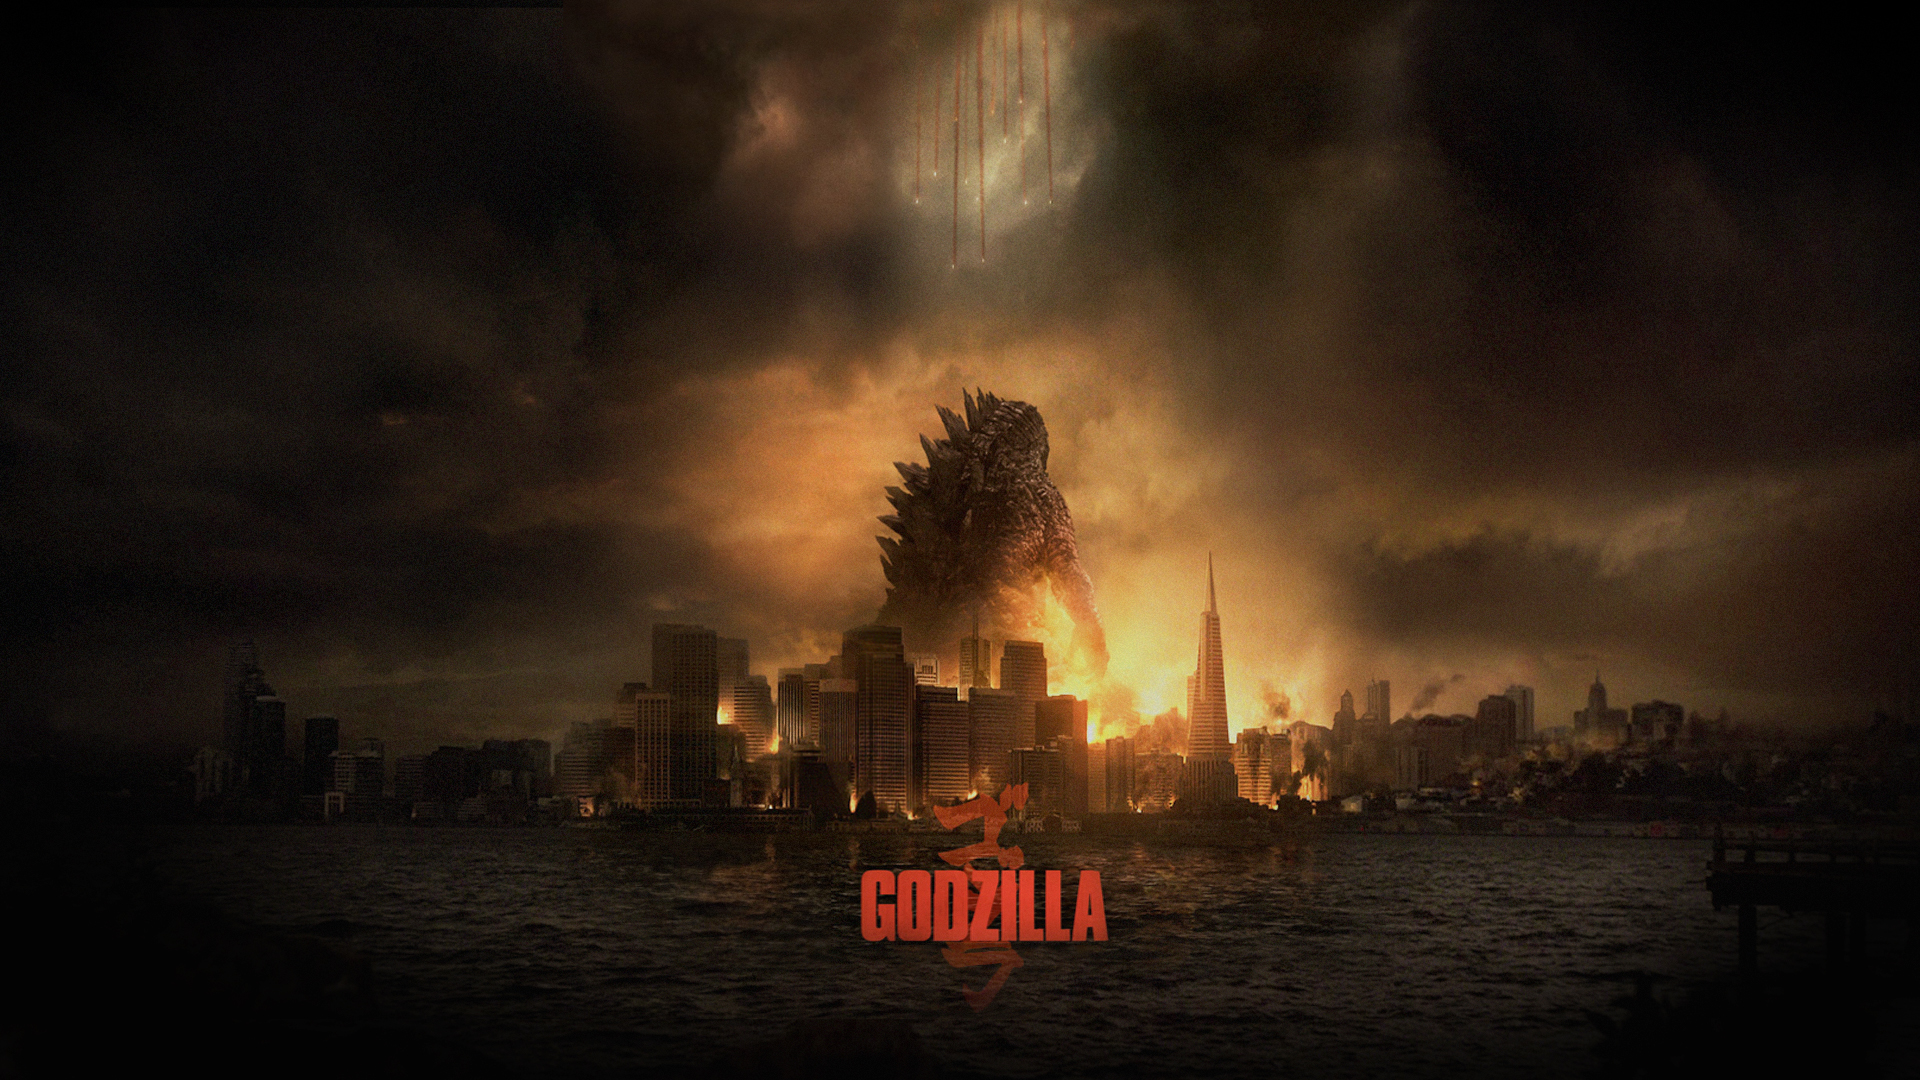 Movie Godzilla (2014) HD Wallpaper | Background Image